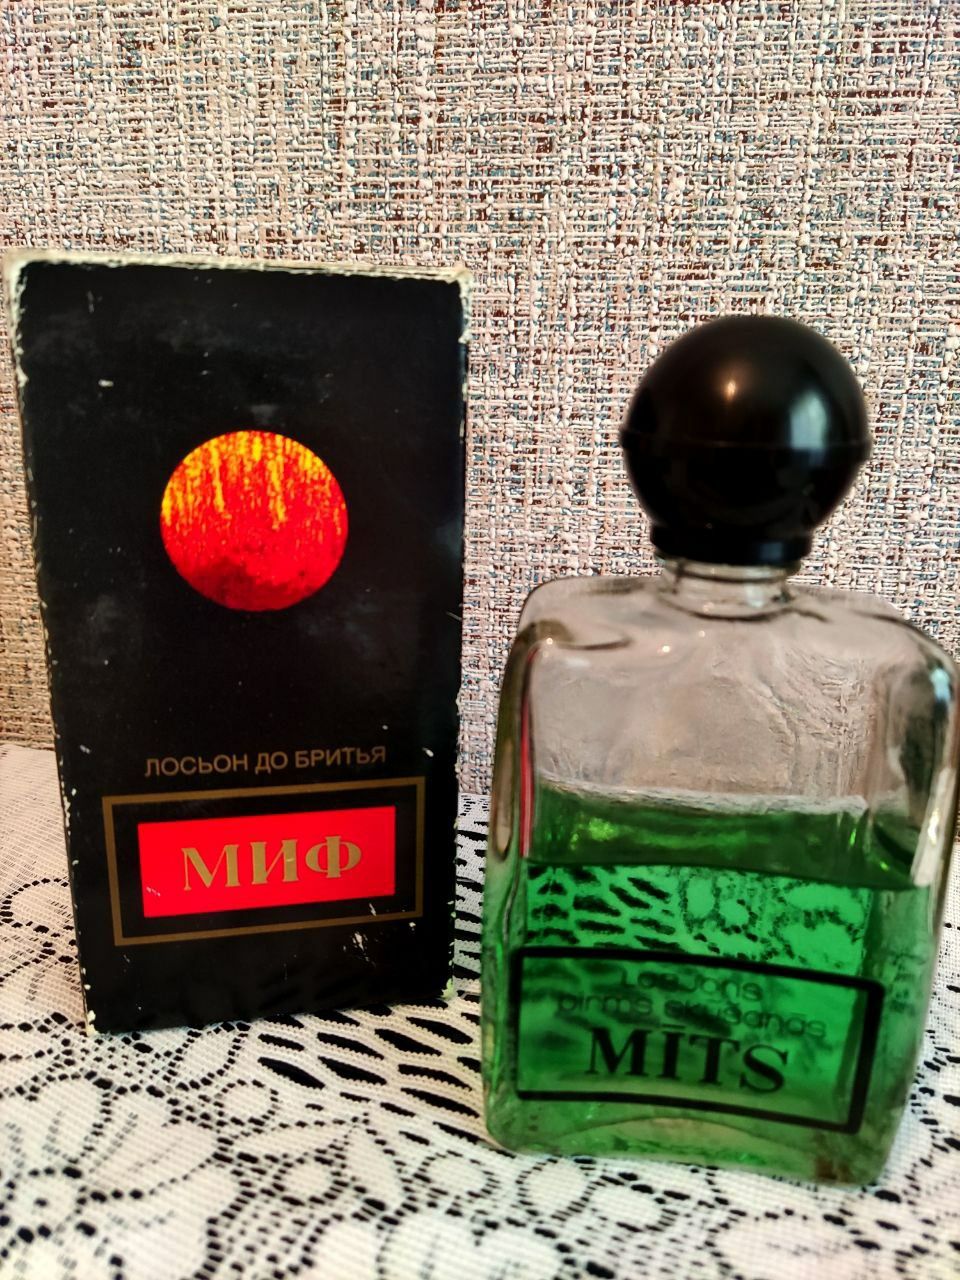 Винтажный парфюм СССР -лосьон для бритья Миф от Дзинтарс.